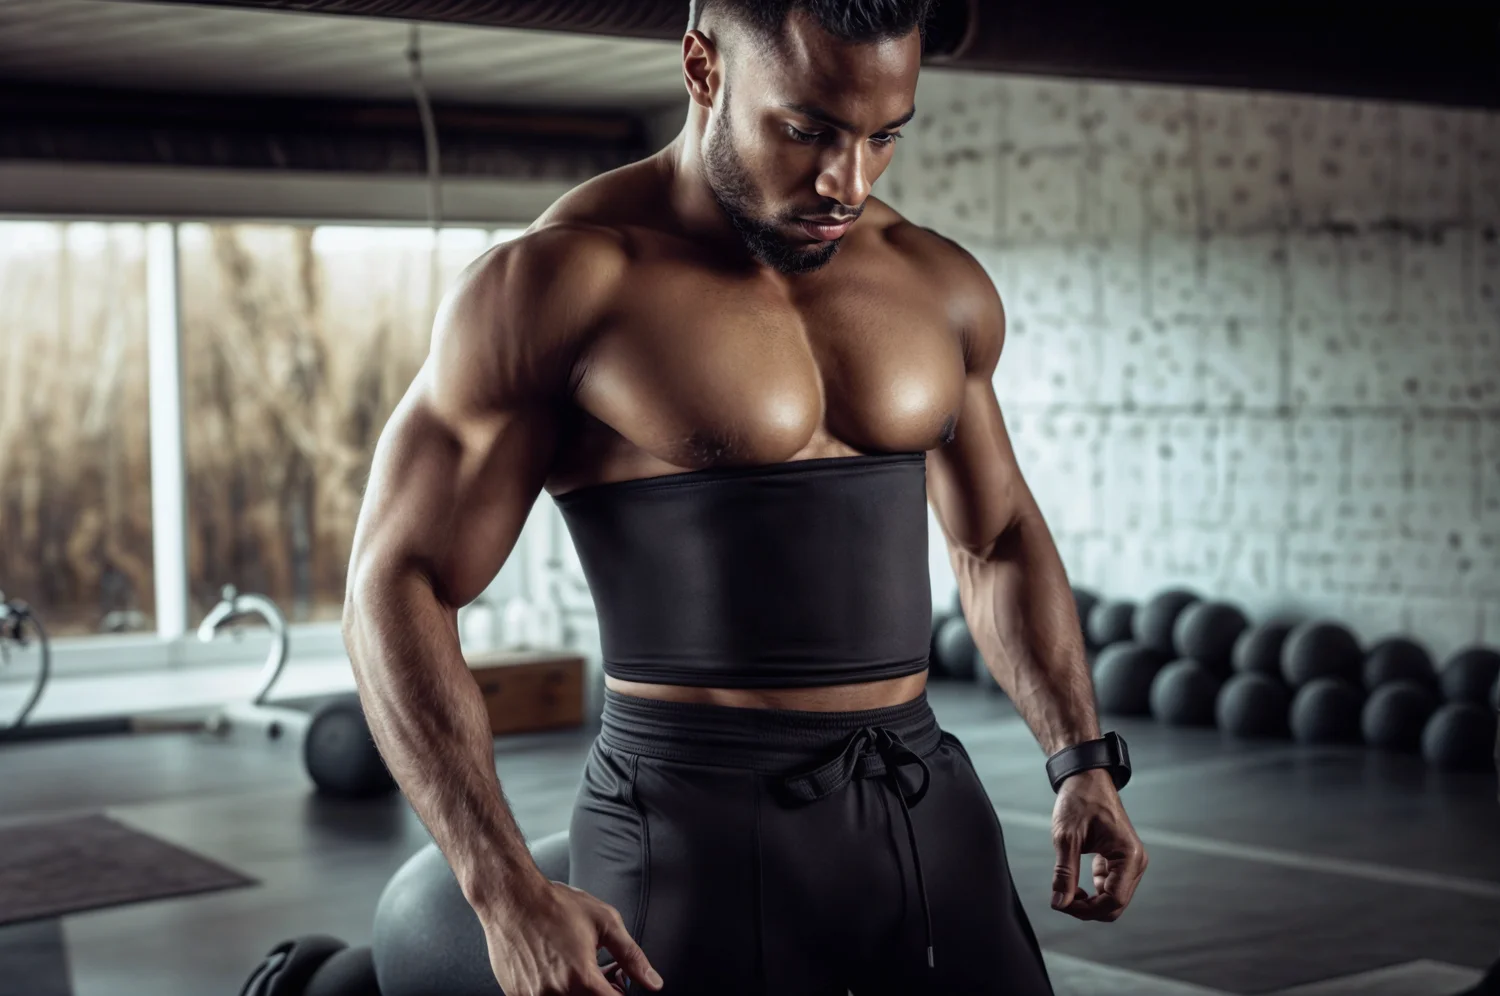 Homme noir musclé portant une ceinture de sudation debout entouré de poids dans une salle de sport